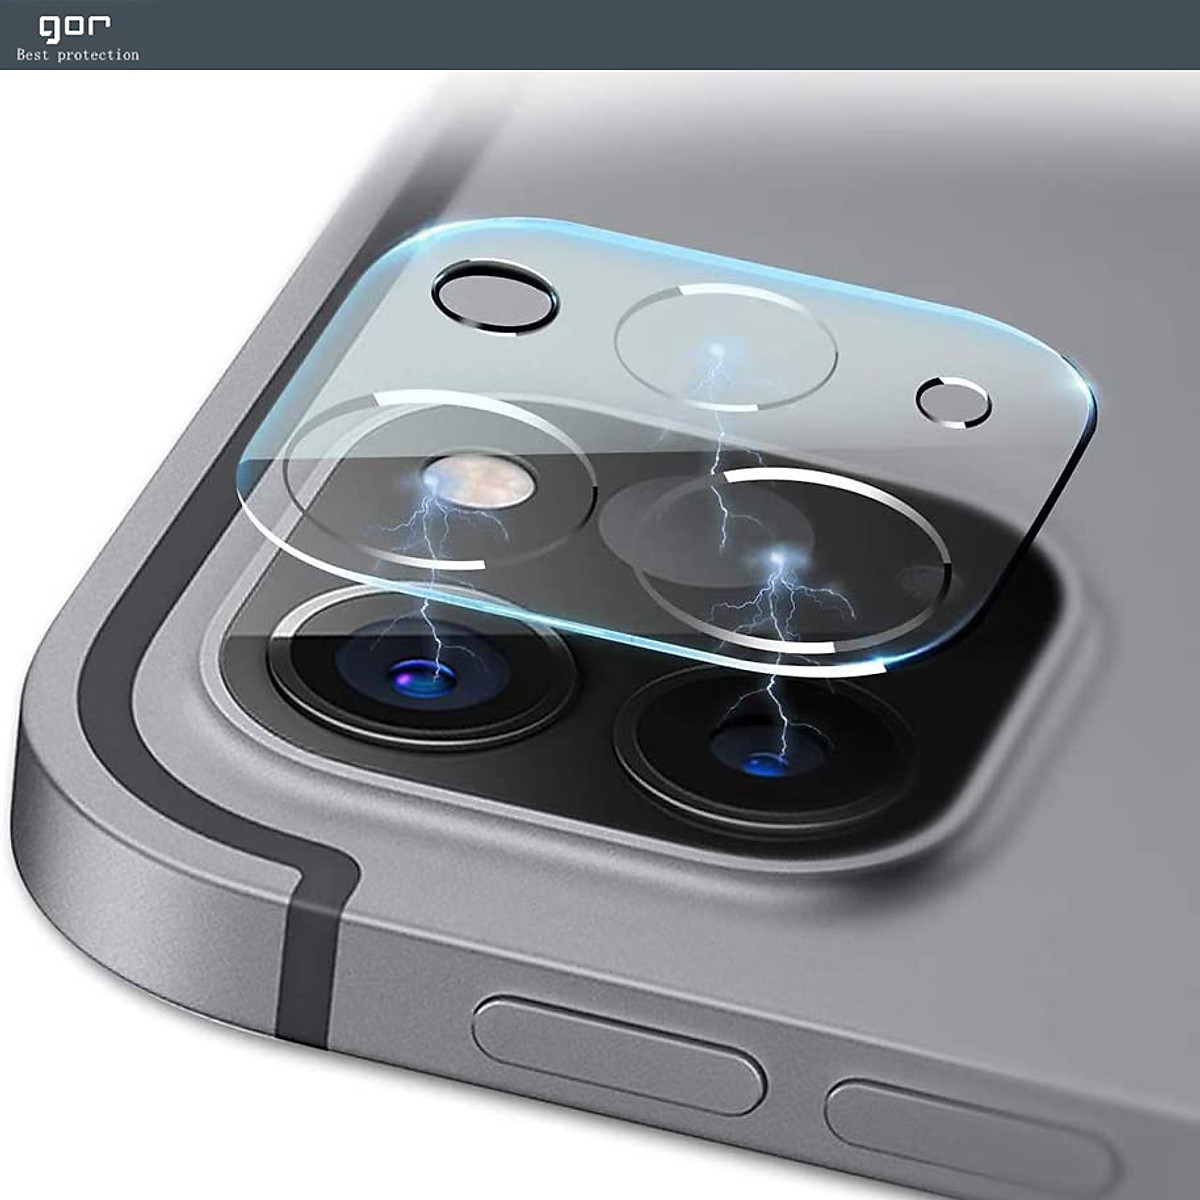 Miếng Dán Kính Cường Lực Camera chống trầy GOR cho iPad Pro 11 inch / iPad Pro 12.9 inch 2020 &amp; 2021 (Bộ 2 Miếng) - Hàng Chính Hãng